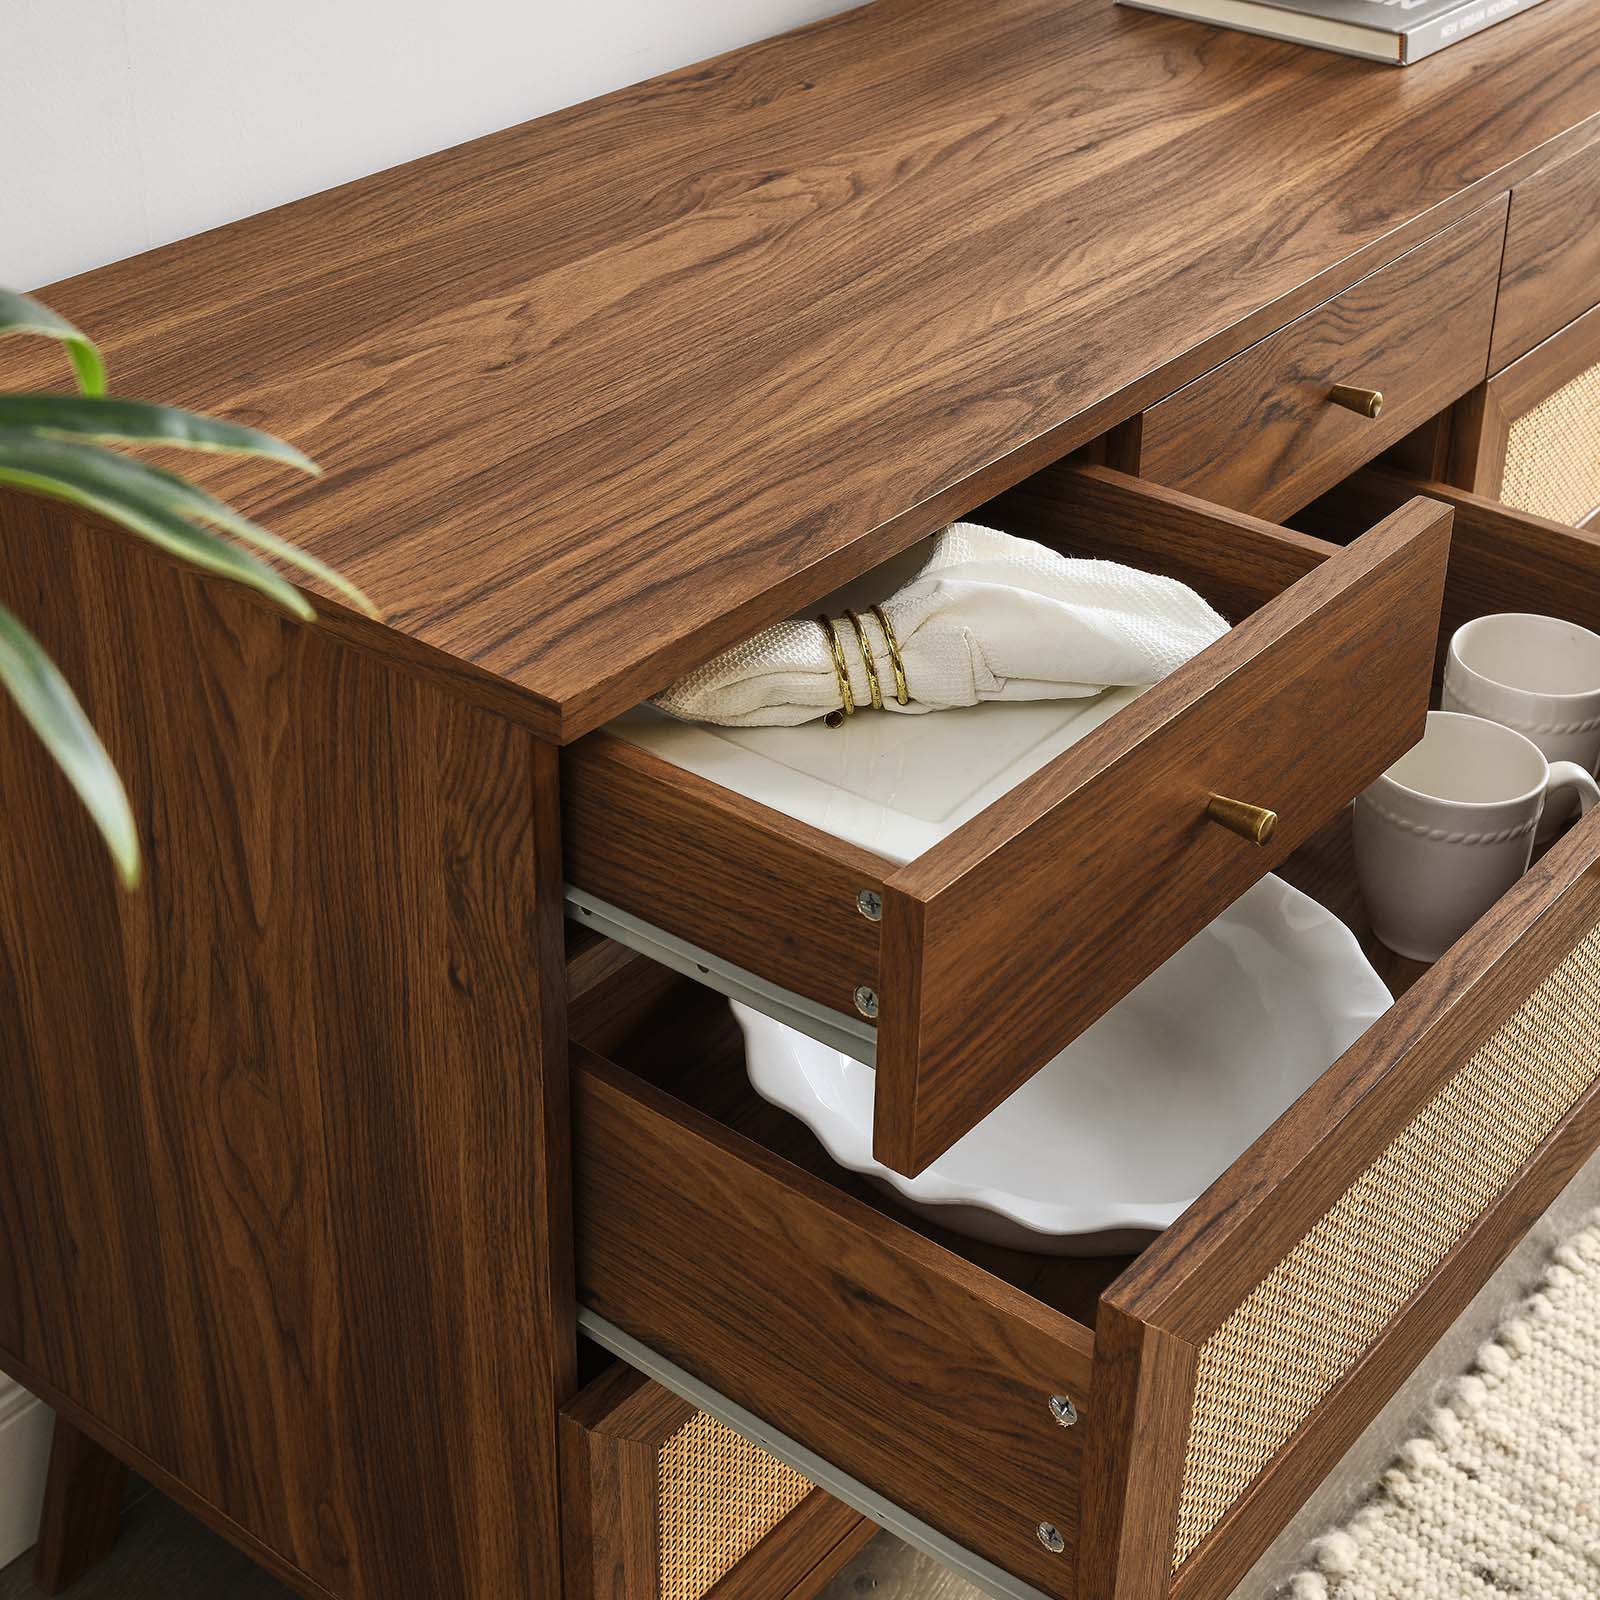 Soma 8-Drawer Dresser - East Shore Modern Home Furnishings